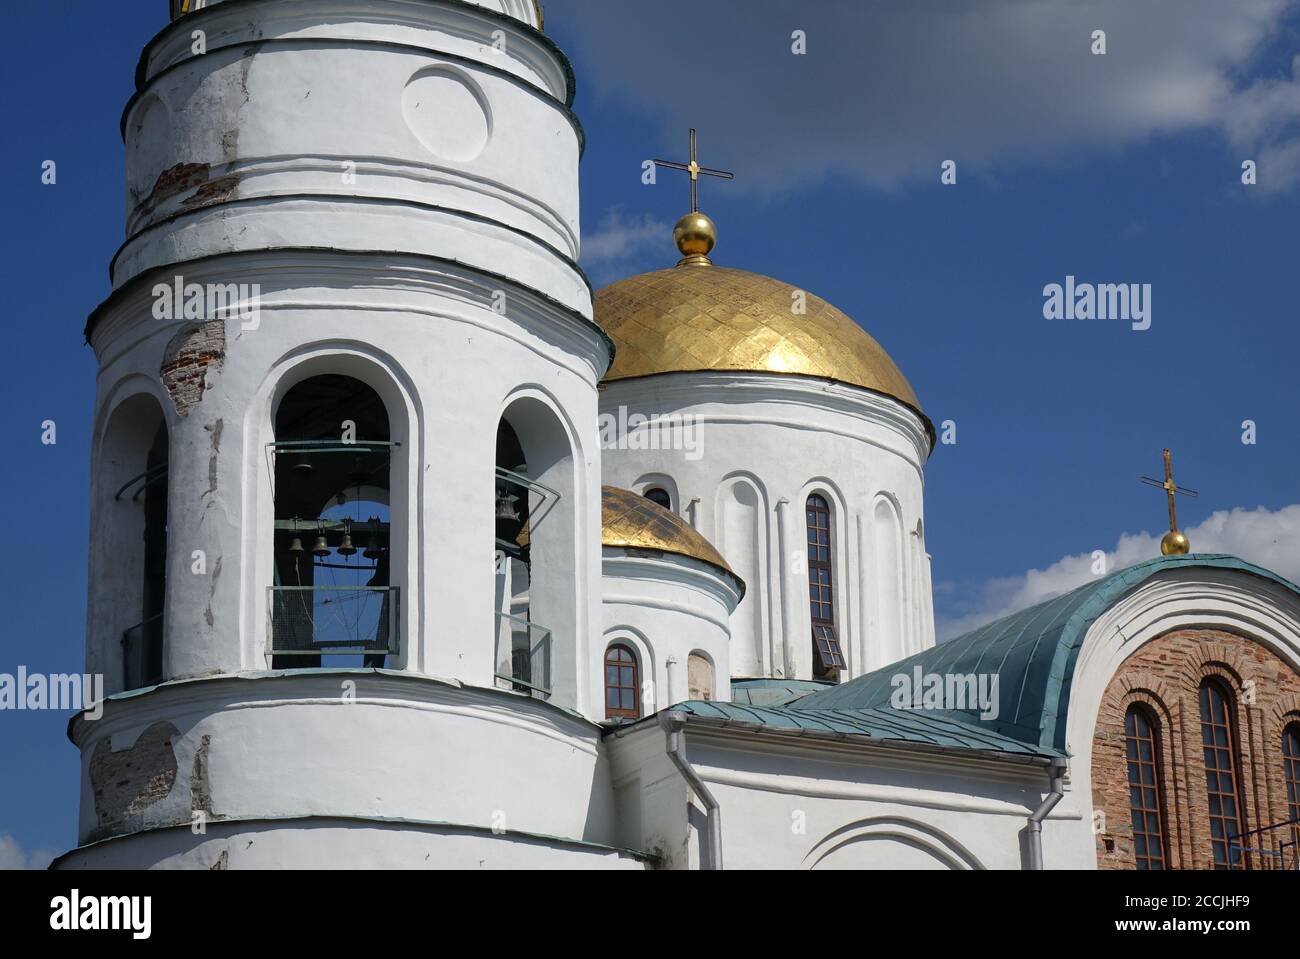 historic christian architecture of Chernihiv, Ukraine, Transfiguration Cathedral Stock Photo